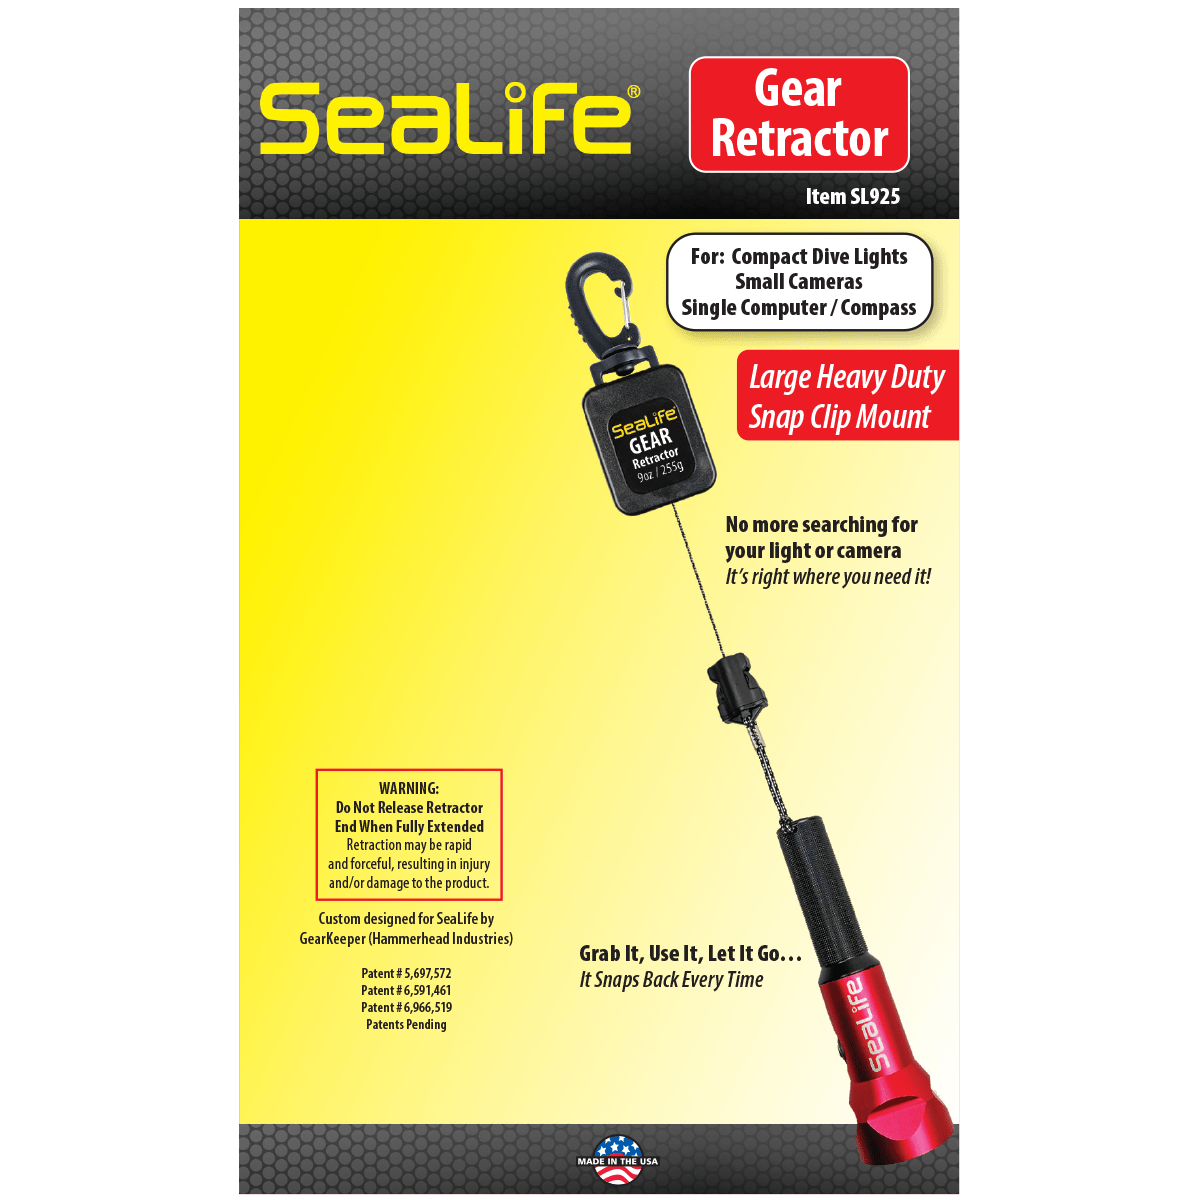 SeaLife Gear Retractor